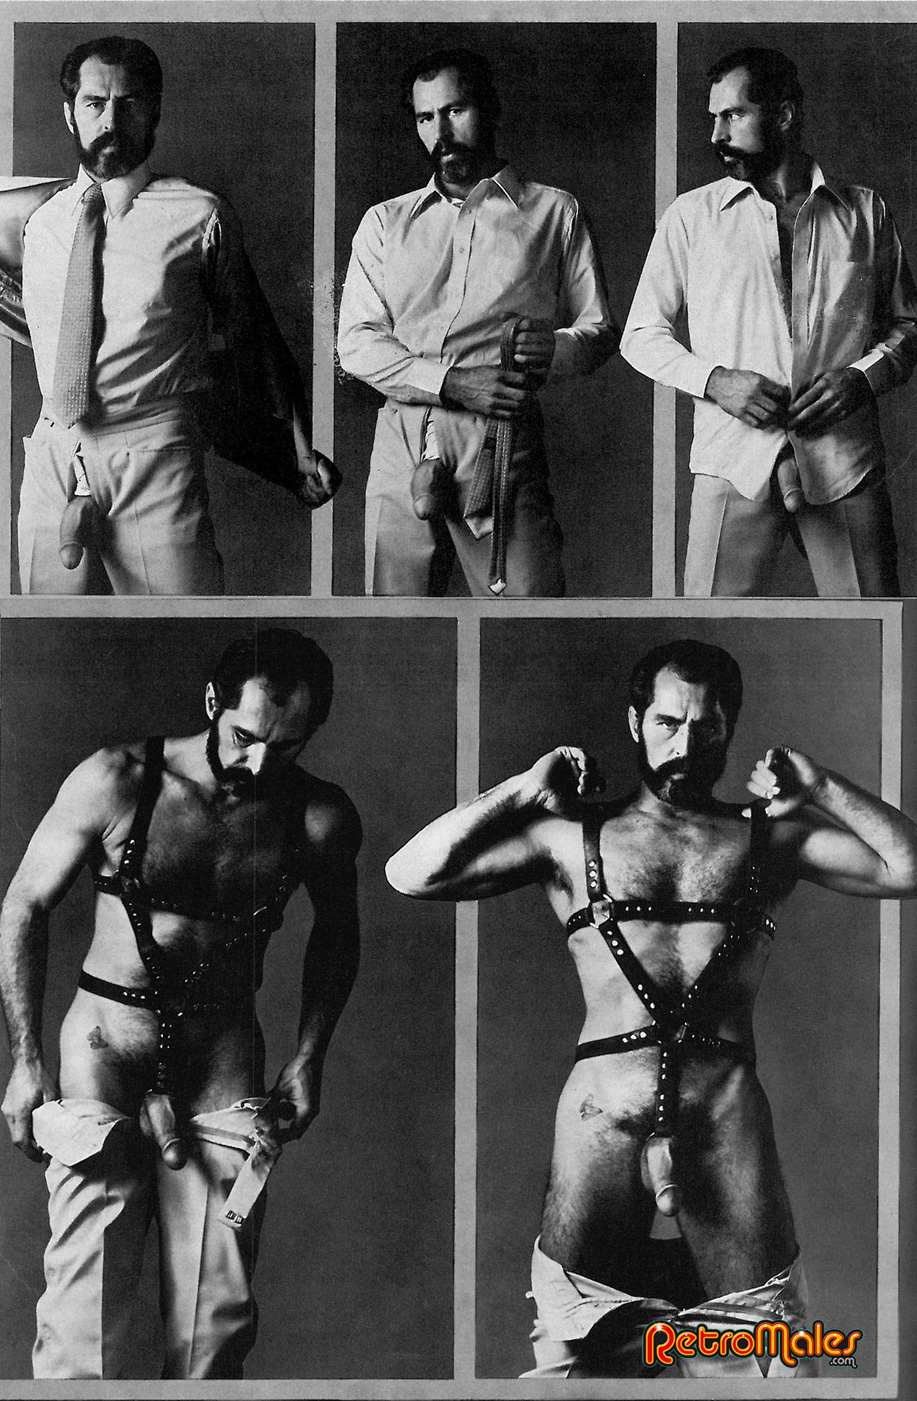 Dreamer Richard Locke Gay Porn - Vintage gay porn with Richard Locke | MetalbondNYC.com